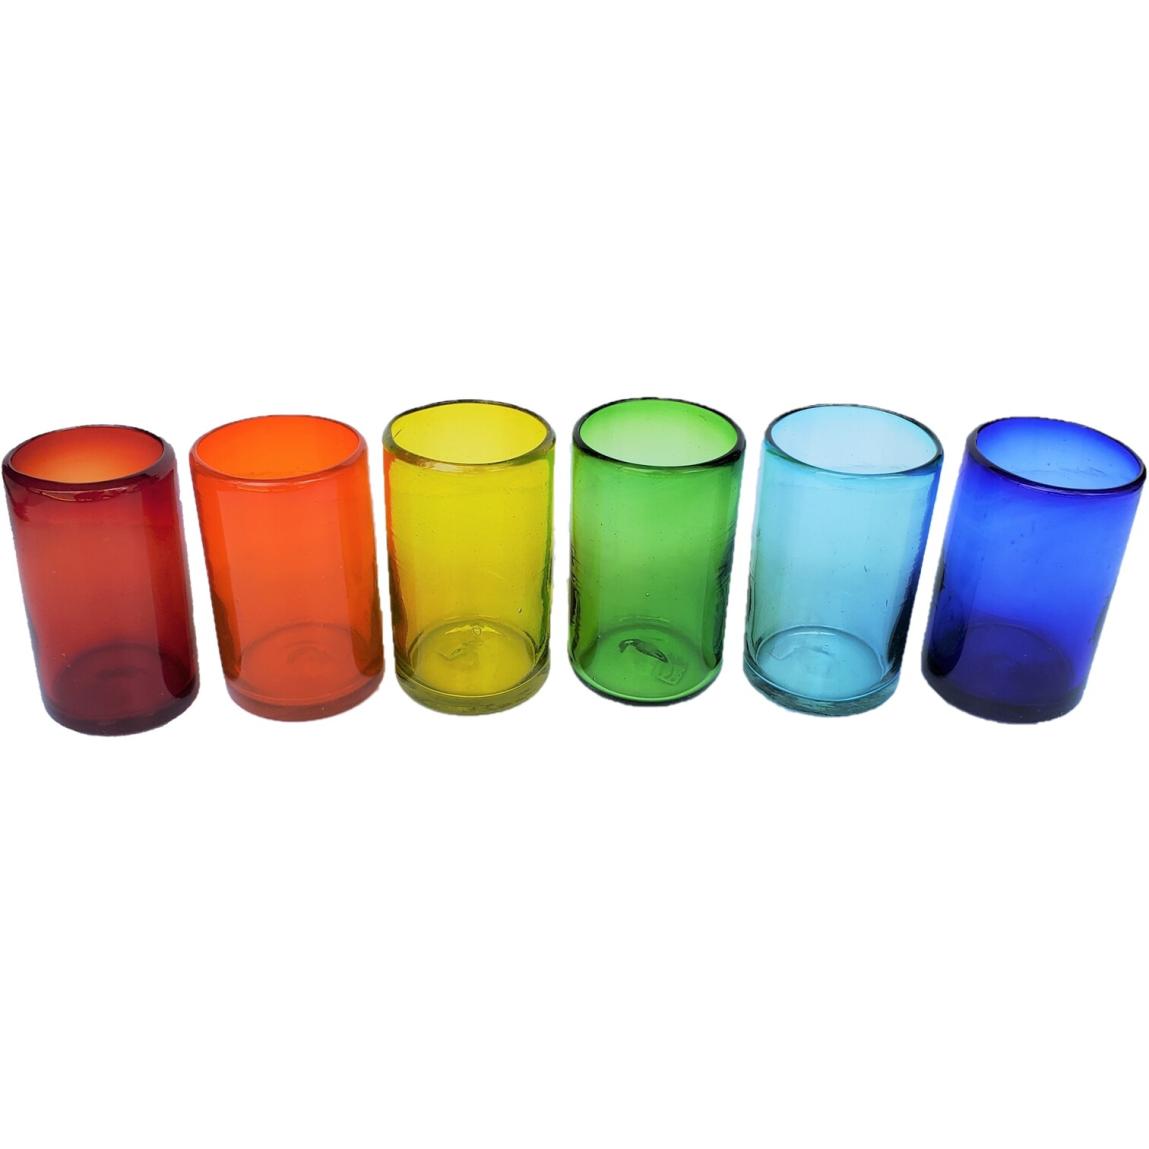 VIDRIO SOPLADO / Juego de 6 vasos grandes de colores Arcoris / stos artesanales vasos le darn un toque clsico a su bebida favorita.